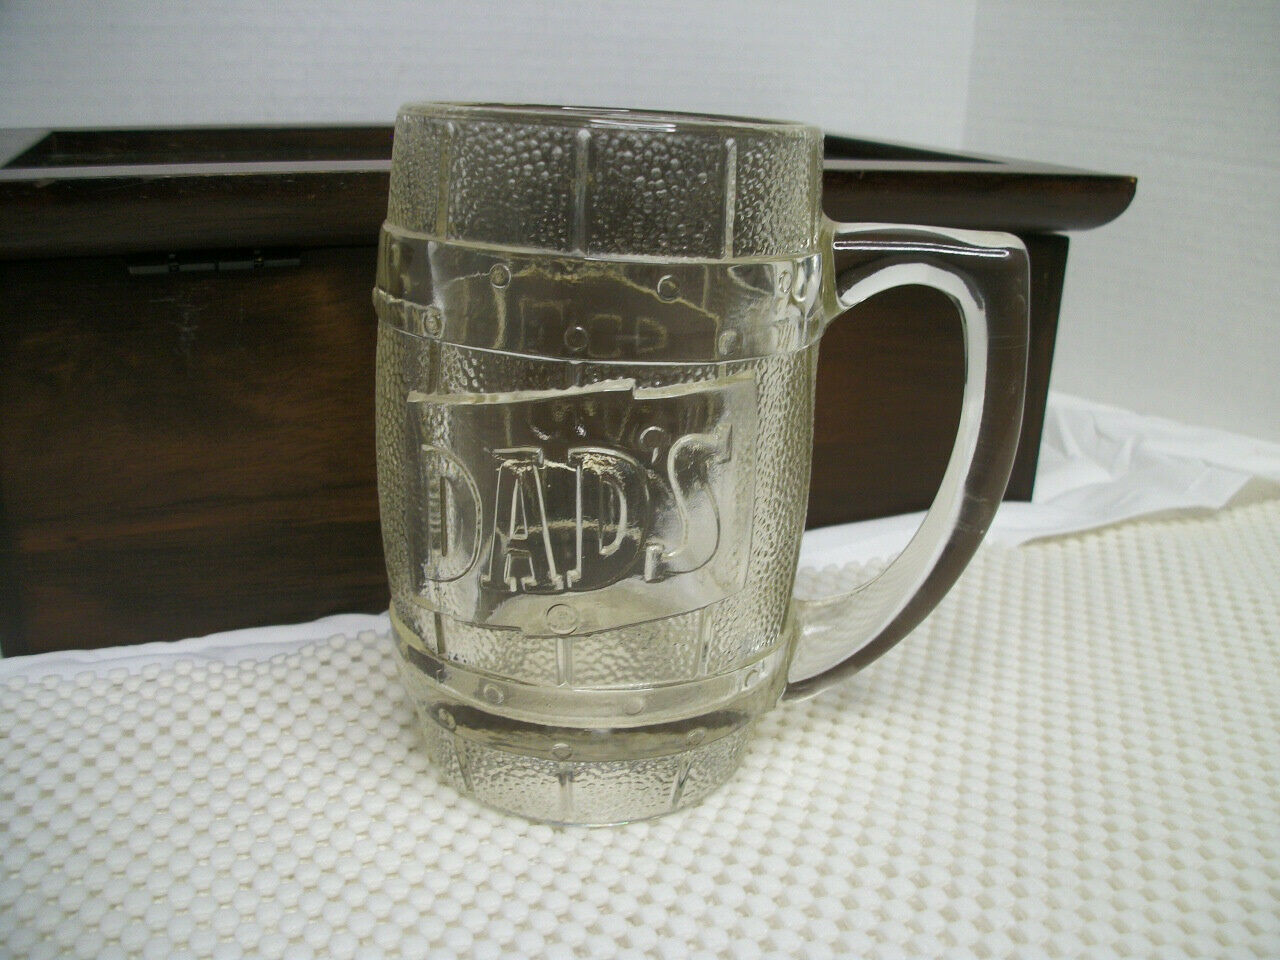 Dads Root Beer Vintage Barrel Mug Heavy Glass Mug, 5 1/4" Tall. Excellent